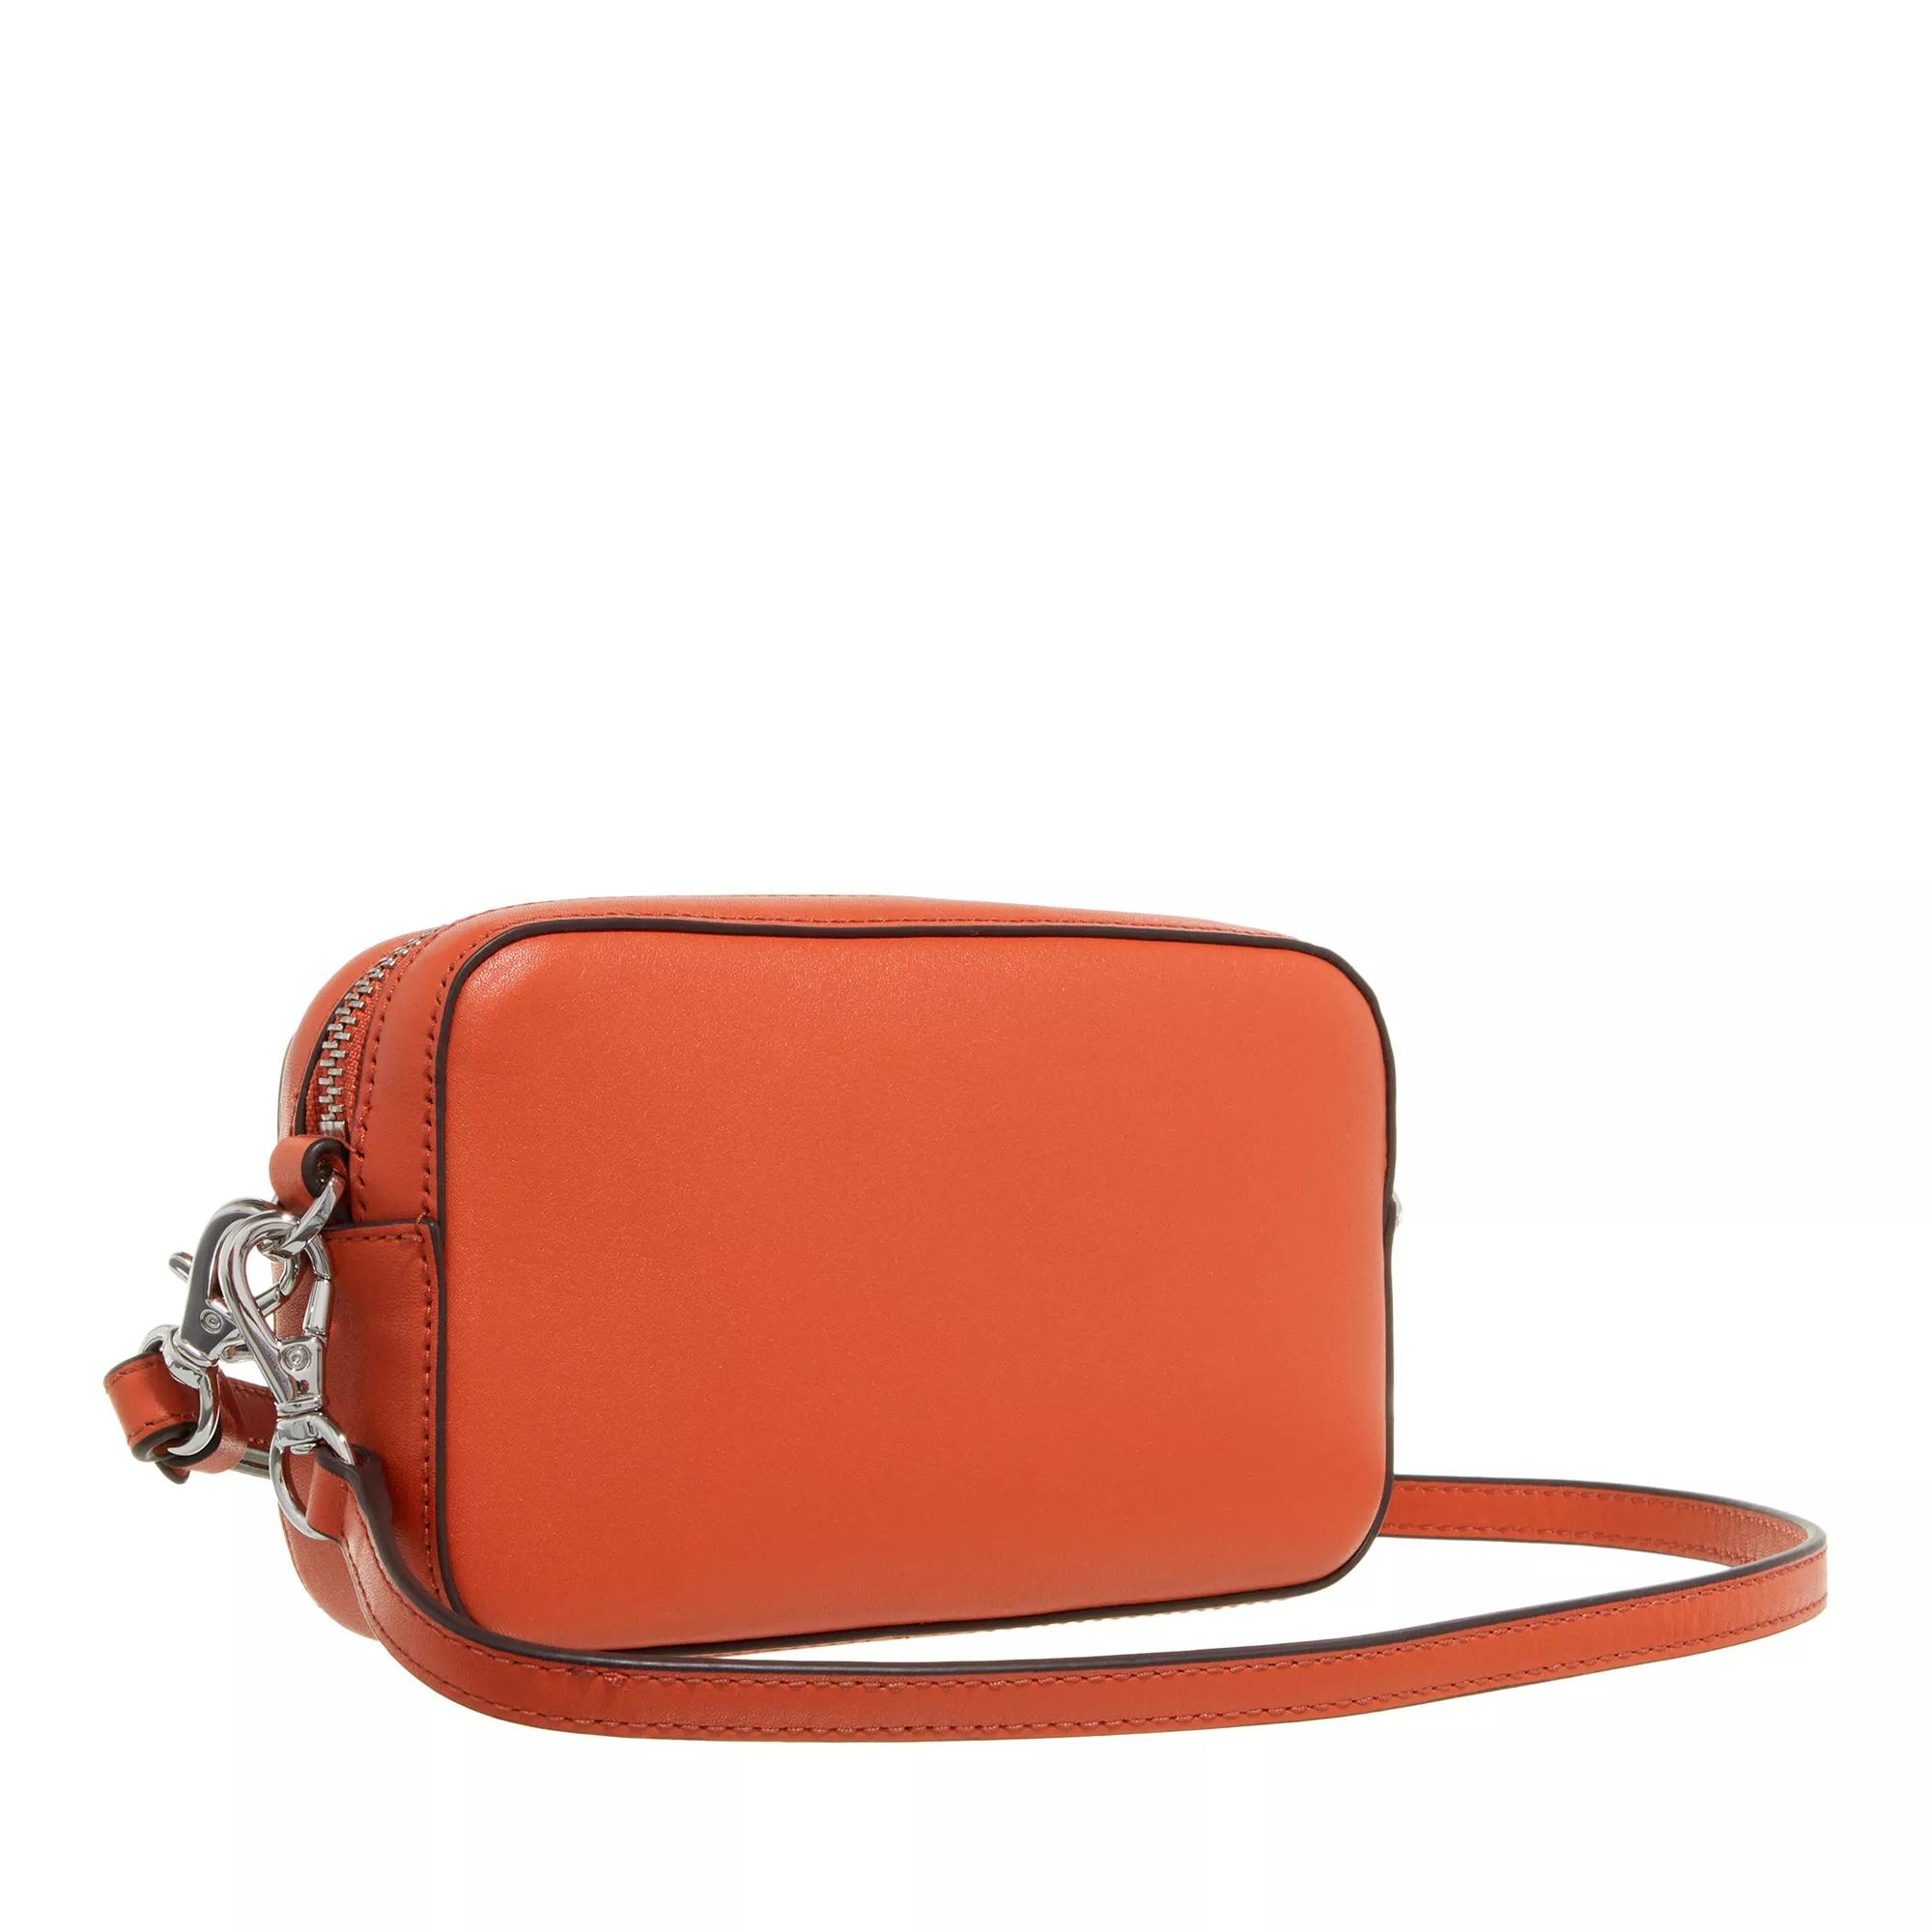 Lauren Ralph Lauren Crossbody bags Marcy Wristlet Pouch Small in oranje